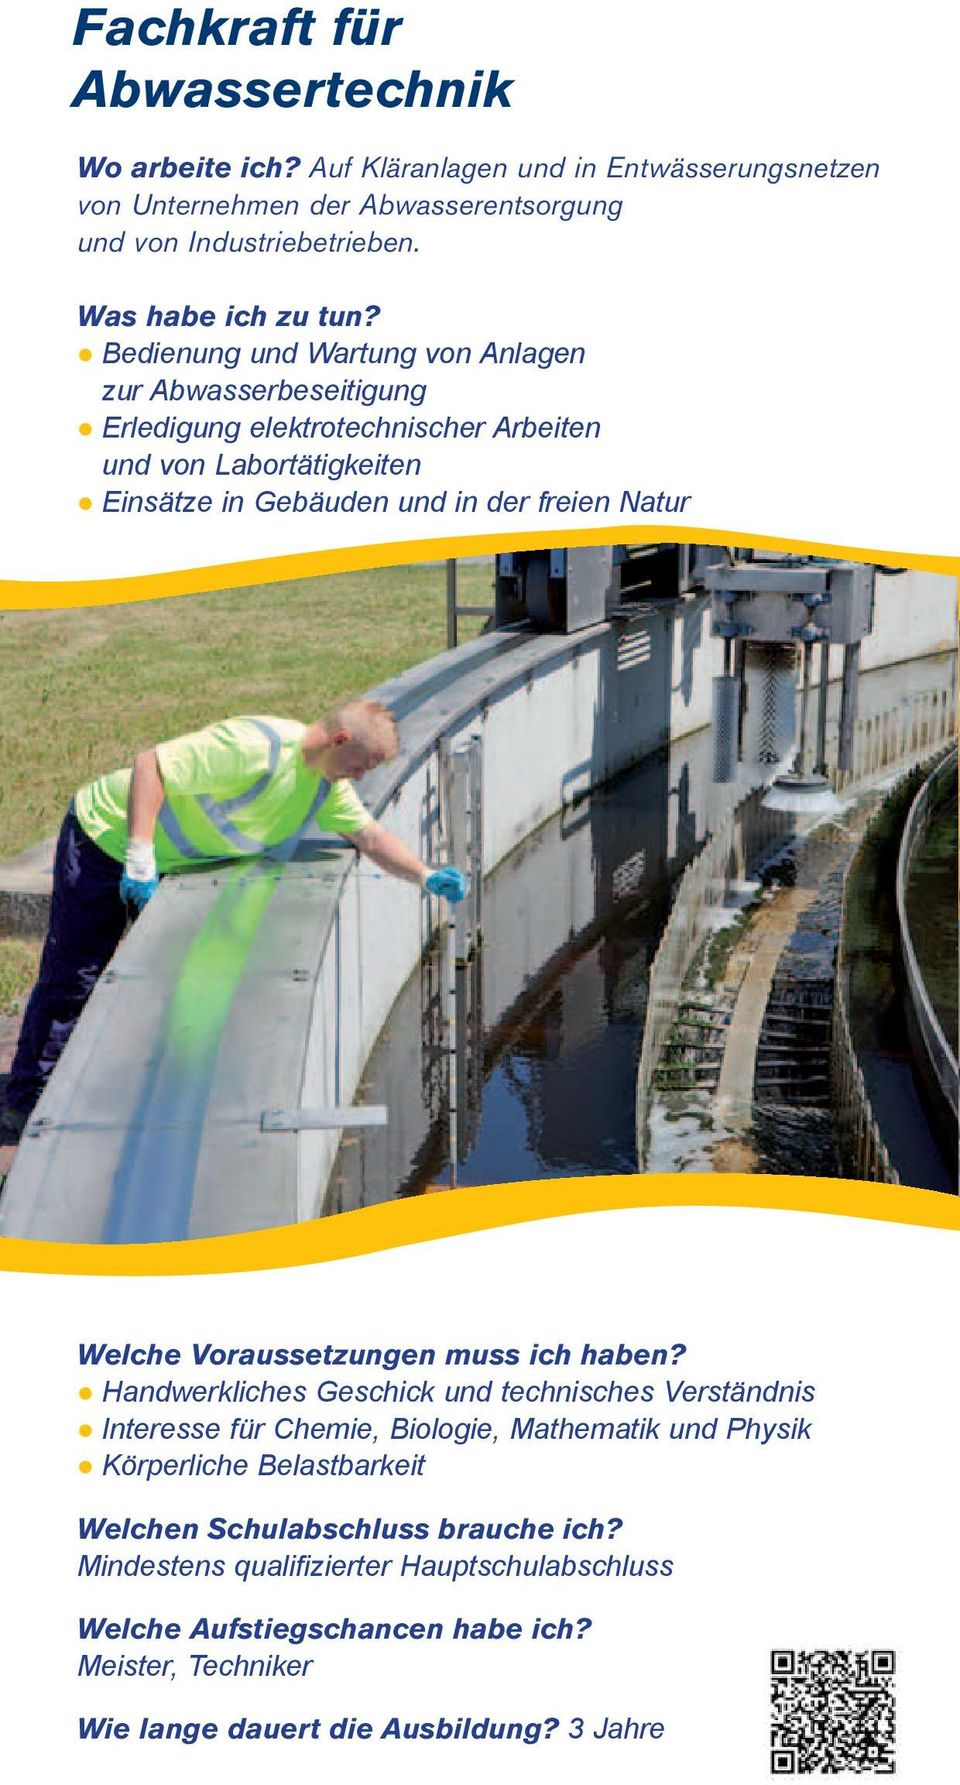 Bedienung und Wartung von Anlagen zur Abwasserbeseitigung Erledigung elektrotechnischer Arbeiten und von Labortätigkeiten